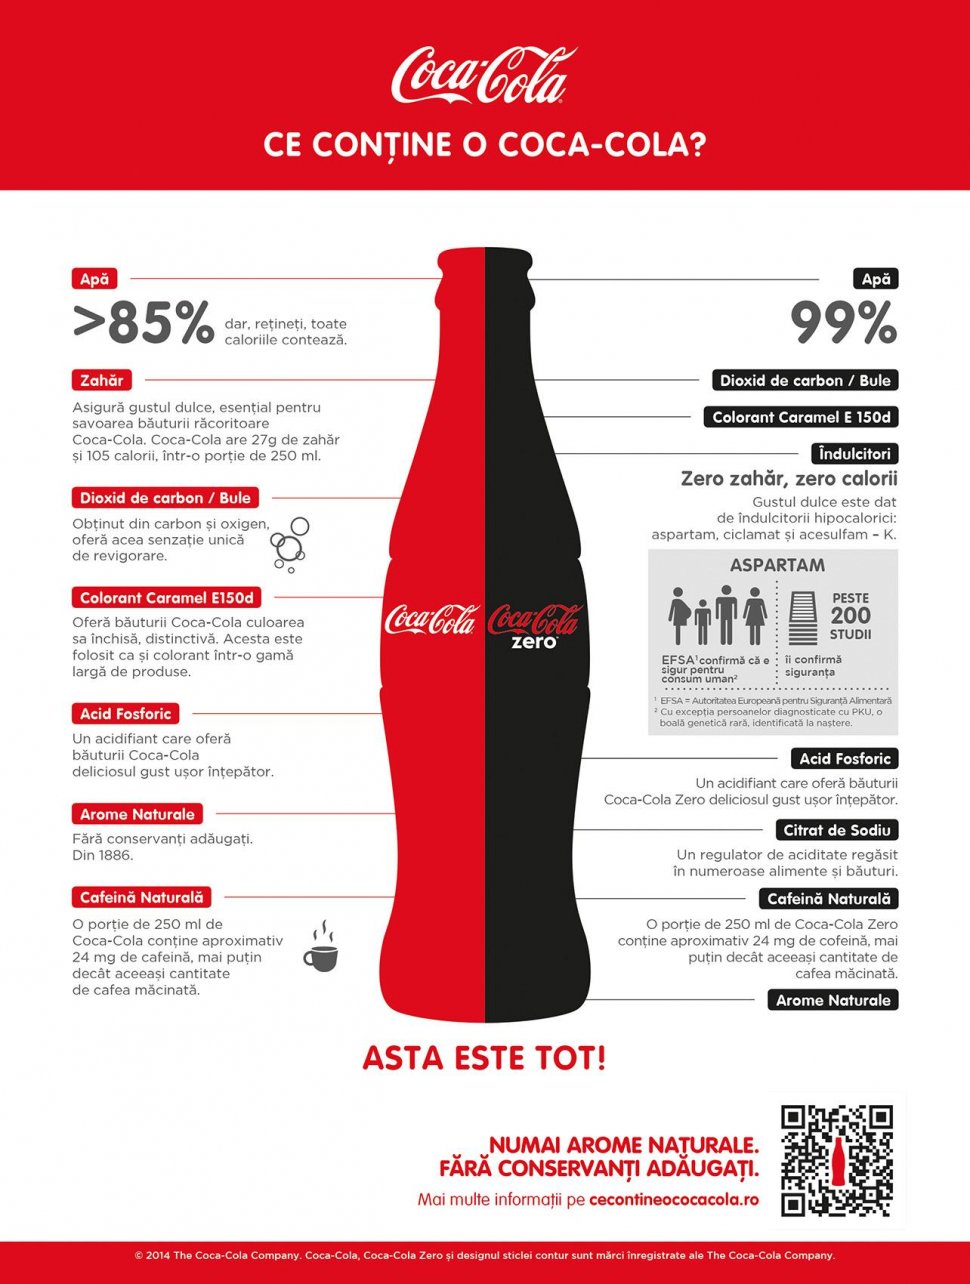 (P) Coca-Cola a lansat o platformă ce oferă informaţii complete despre ce conţine faimoasa băutură